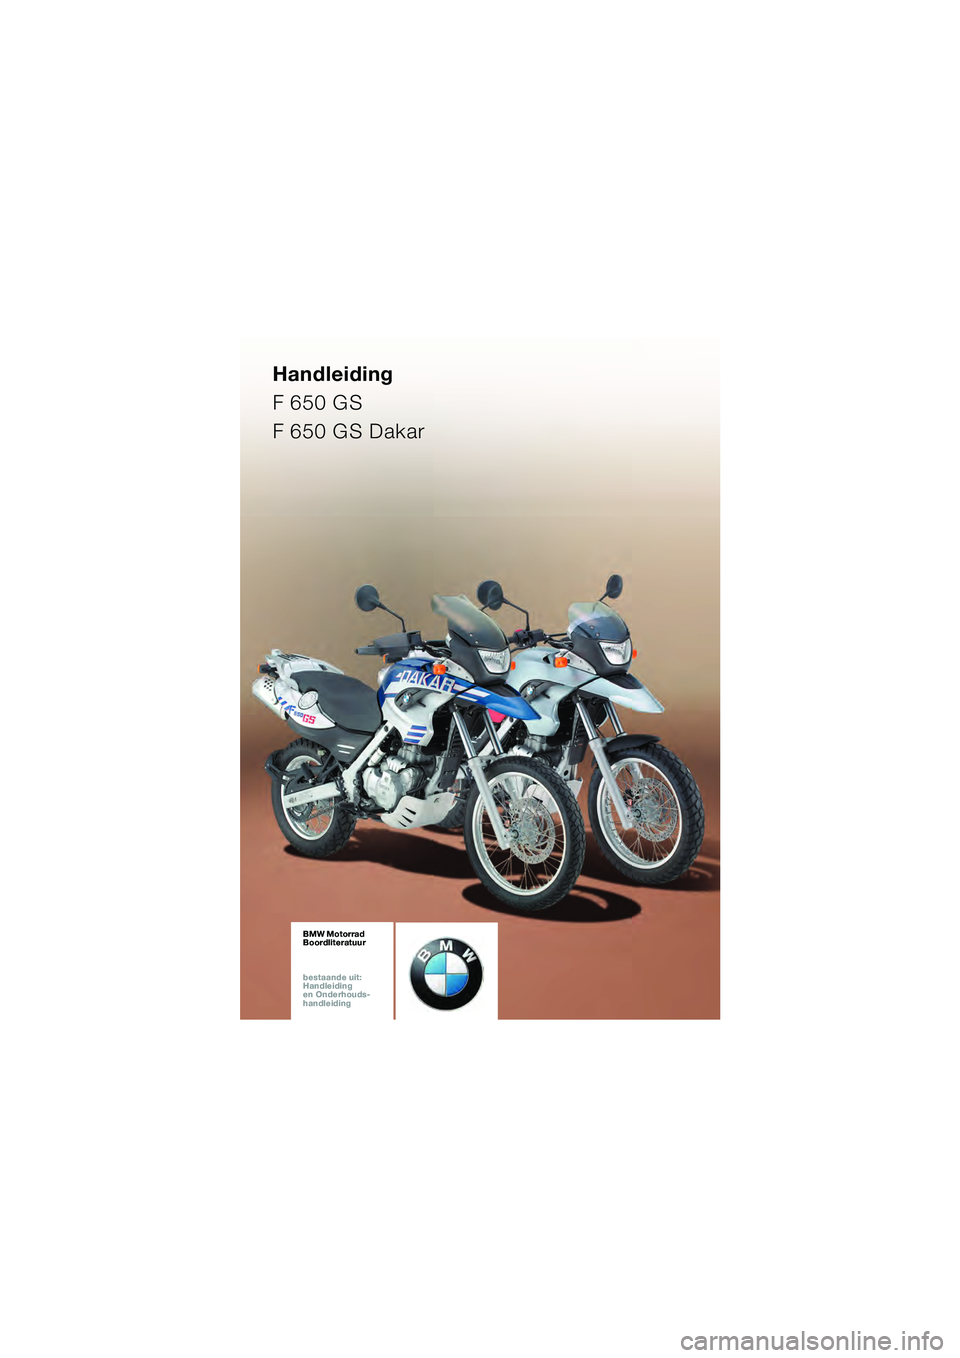 BMW MOTORRAD F 650 GS DAKAR 2003  Handleiding (in Dutch) Handleiding
F 650 GS
F 650 GS Dakar
BMW Motorrad
Boordliteratuur
bestaande uit:  
Handleiding  
en Onderhouds- 
handleidingBMW Motorrad
Boordliteratuur
bestaande uit:  
Handleiding  
en Onderhouds- 
h